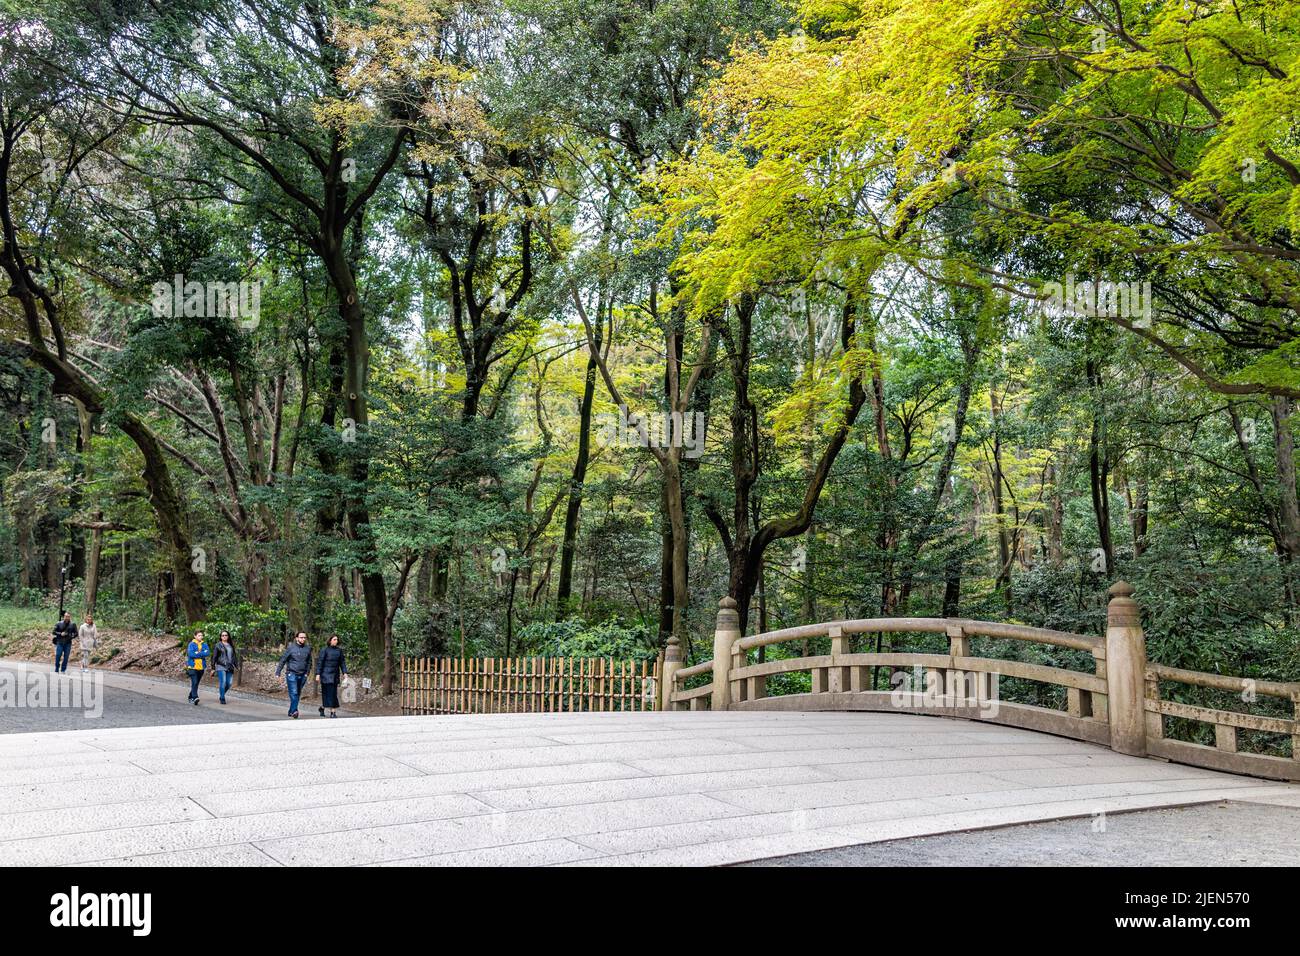 Tokio, Japón - 28 de marzo de 2019: Santuario Meiji con bosque de árboles verdes y turistas caminando hacia el puente en el parque durante la temporada de primavera Foto de stock